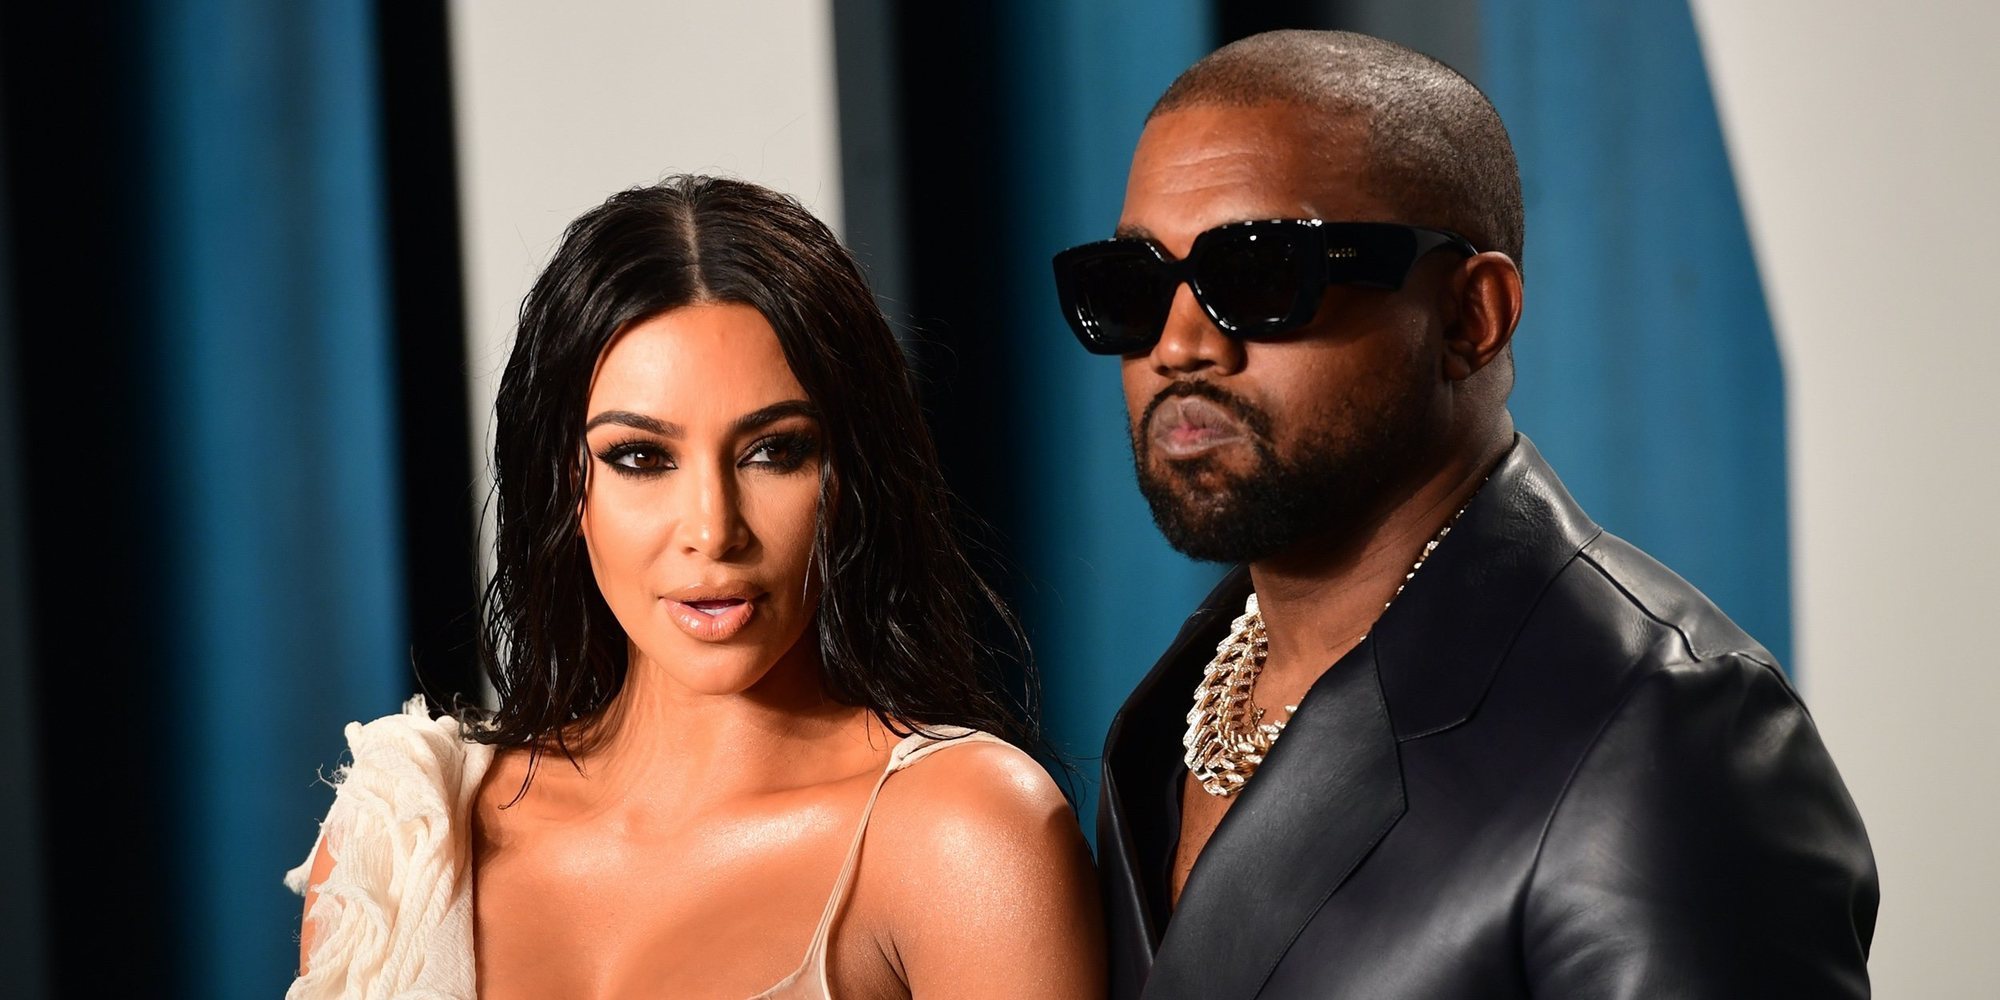 El millonario acuerdo prenupcial de Kim Kardashian y Kanye West que prácticamente se ha quedado obsoleto